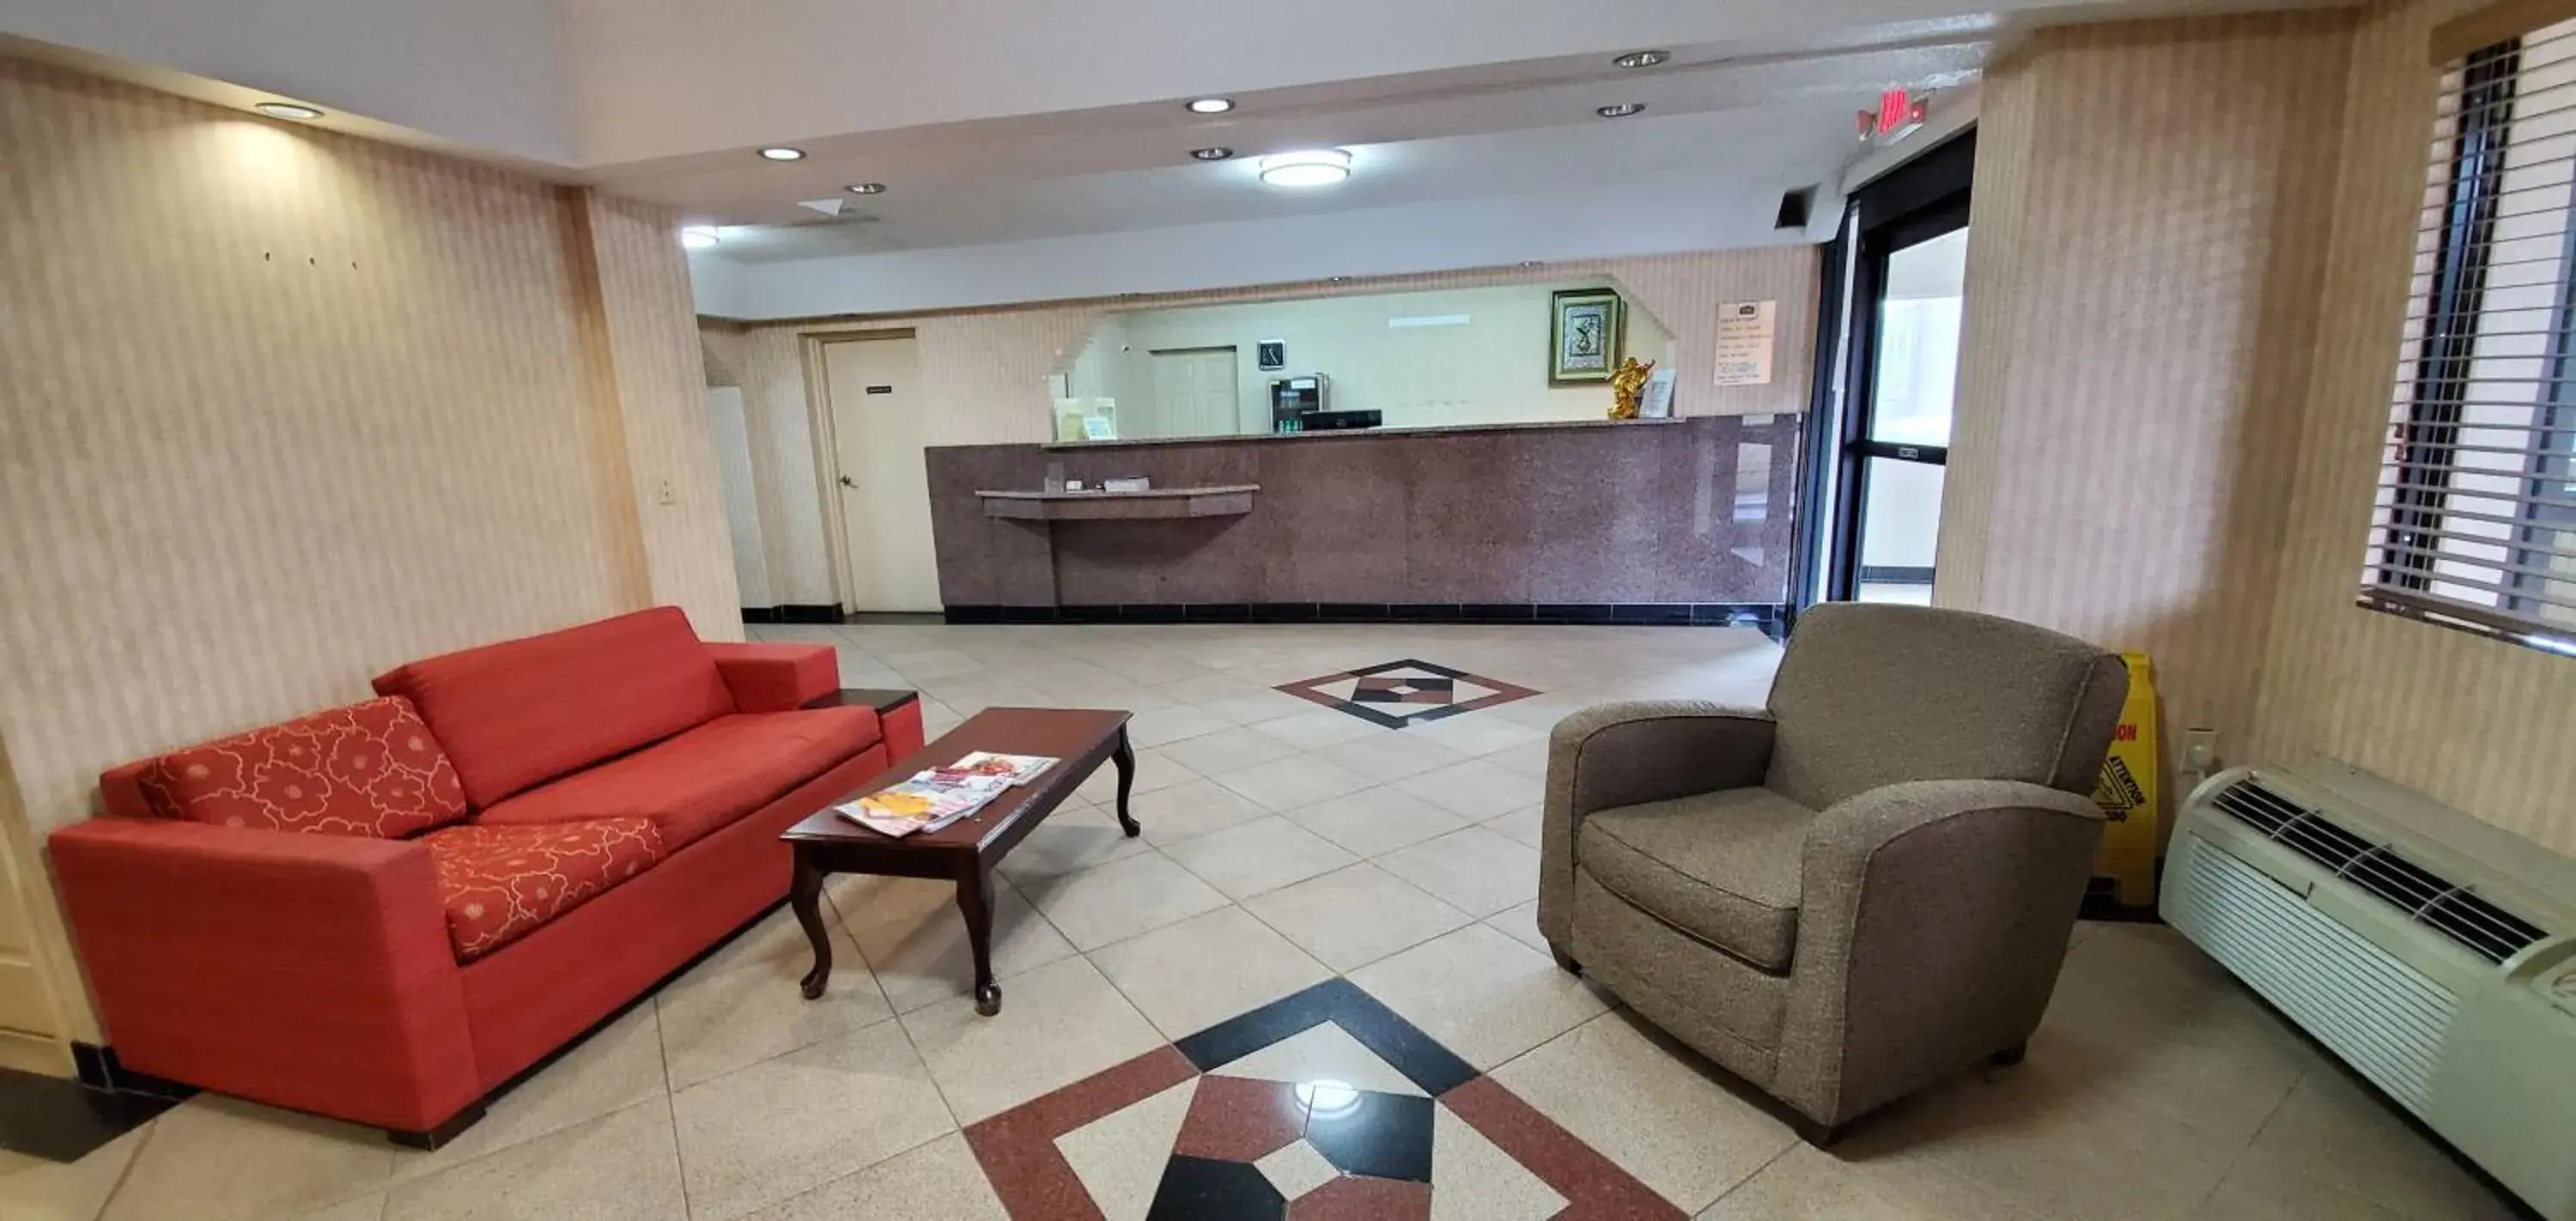 Lobby or reception, Lobby/Reception in FairBridge Inn & Suites